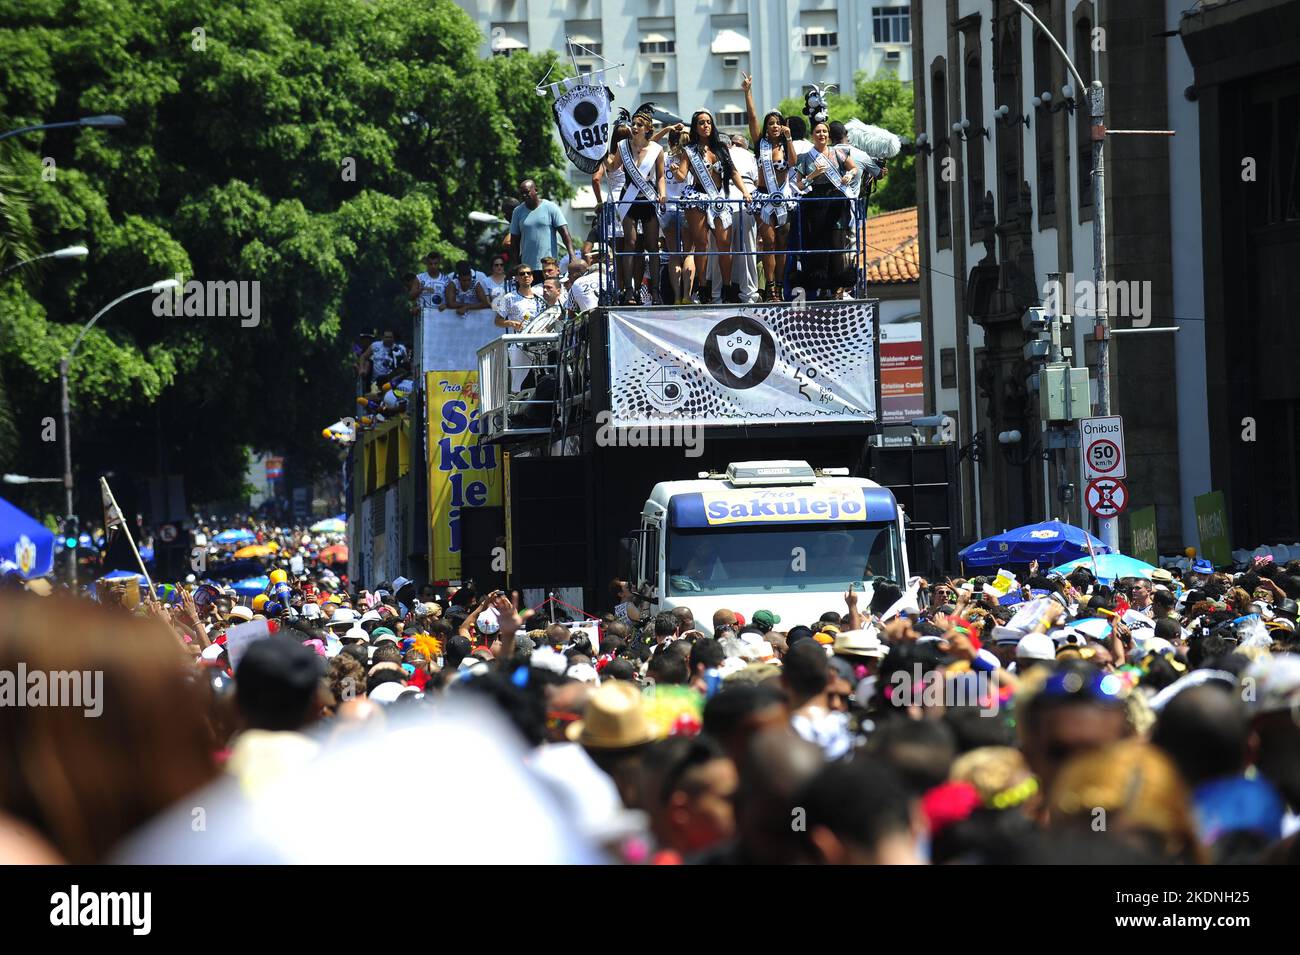 Folla di persone che festeggia alla sfilata di carnevale brasiliana di strada. Panoramica dei festaioli del carnevale che si riuniscono al bloco Cordão do Bola Preta Foto Stock